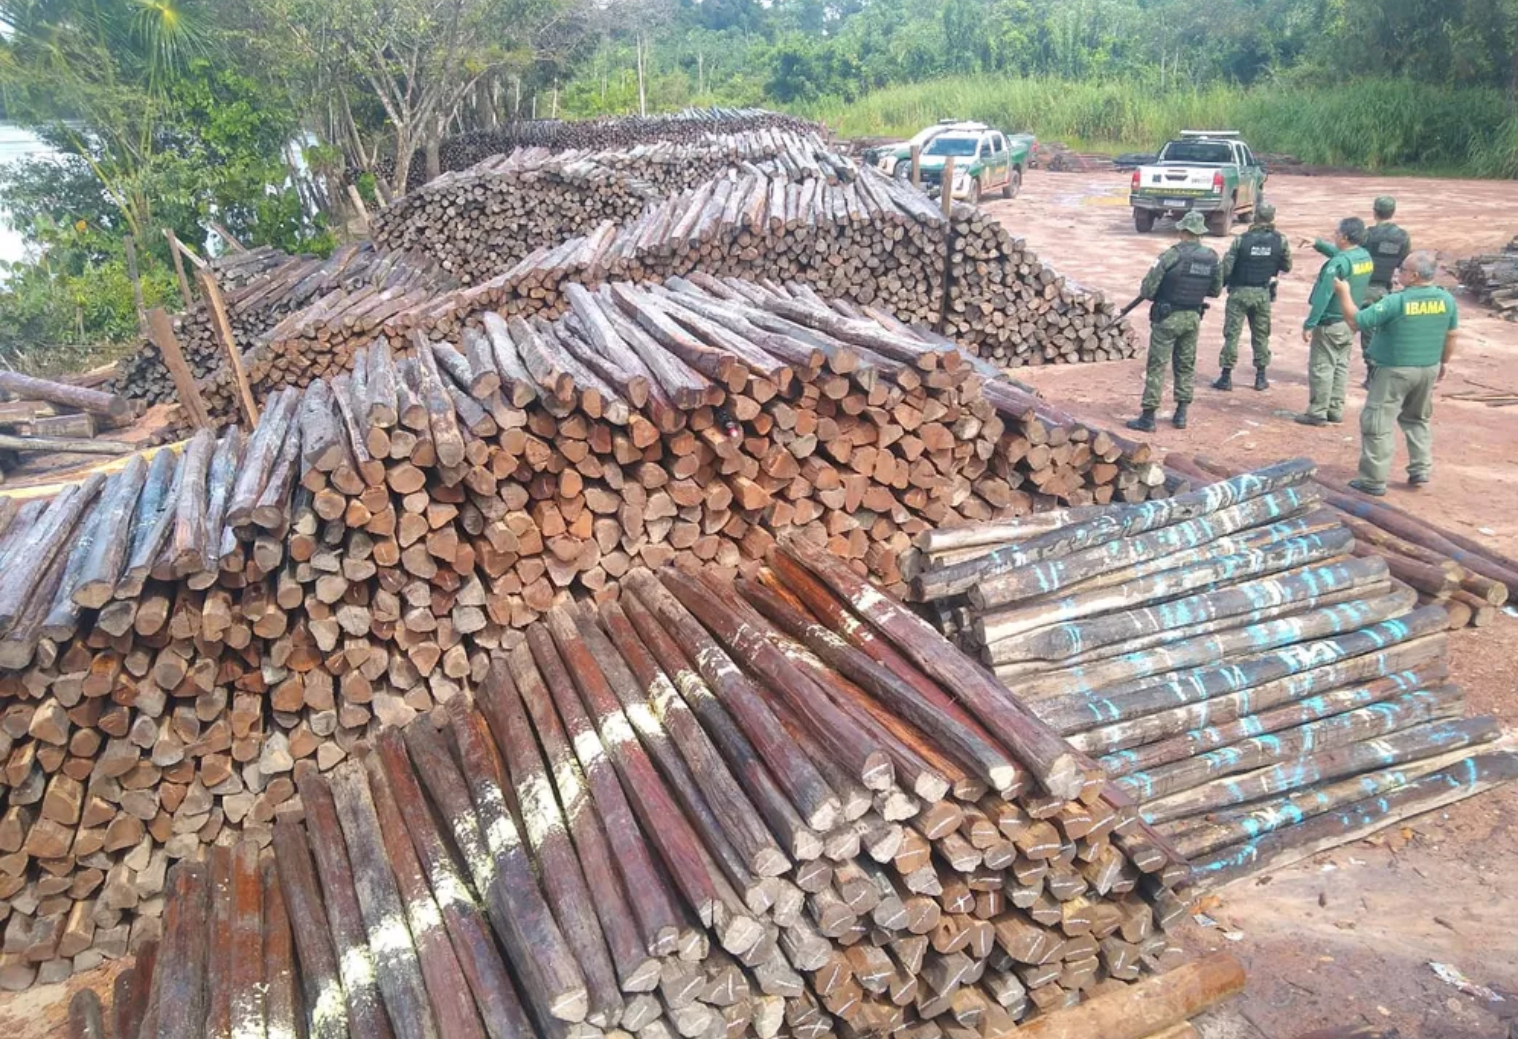 Ibama - Exploração ilegal de madeira na Amazônia é impulsionada por 100 propriedades rurais com CAR, diz estudo